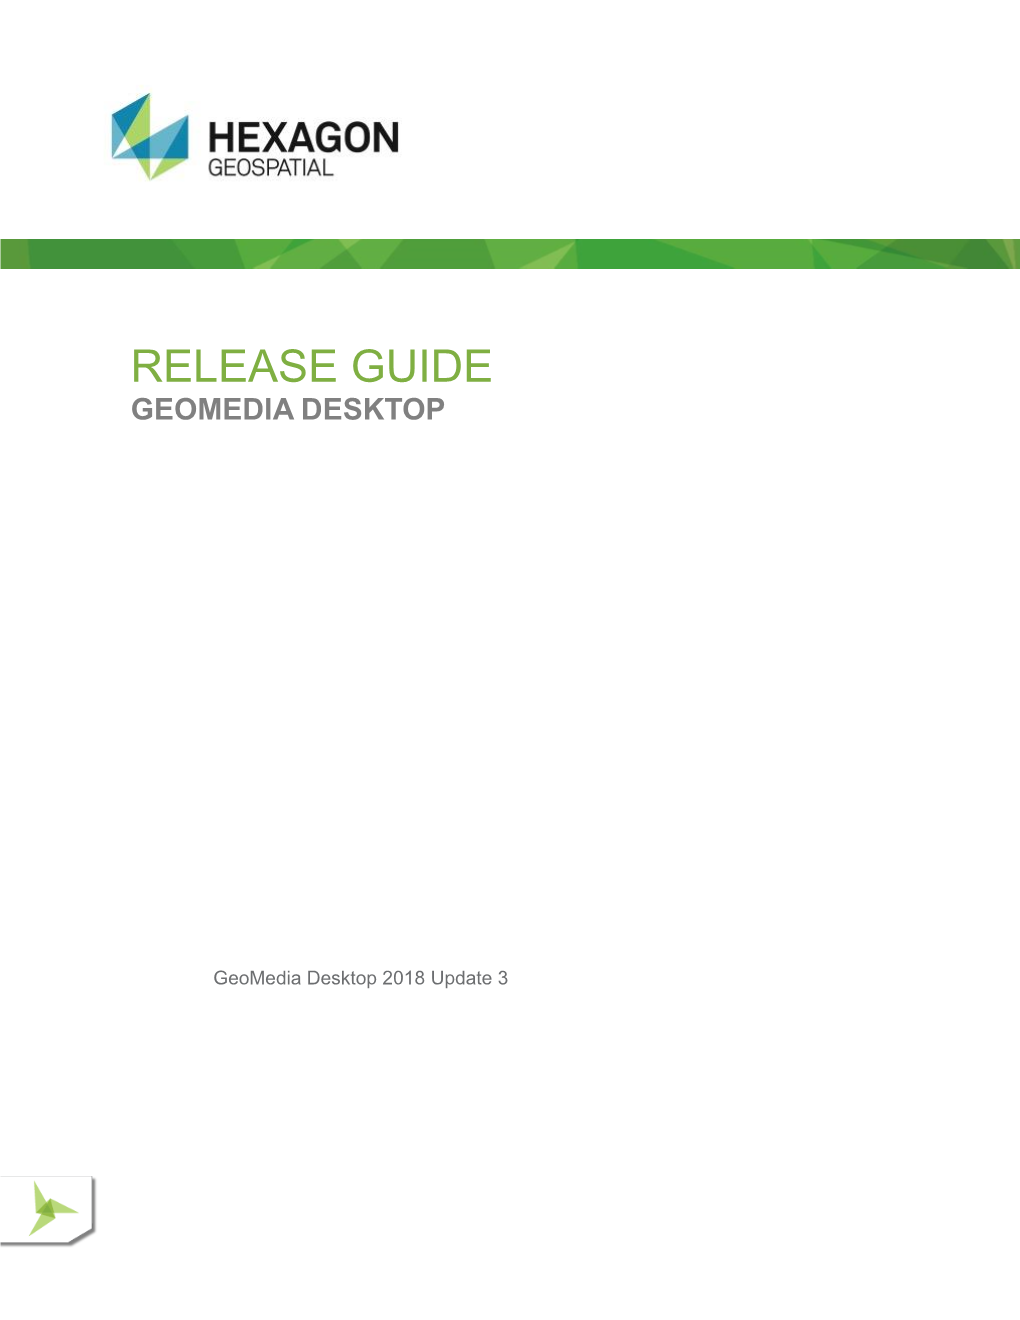 Release Guide Geomedia Desktop